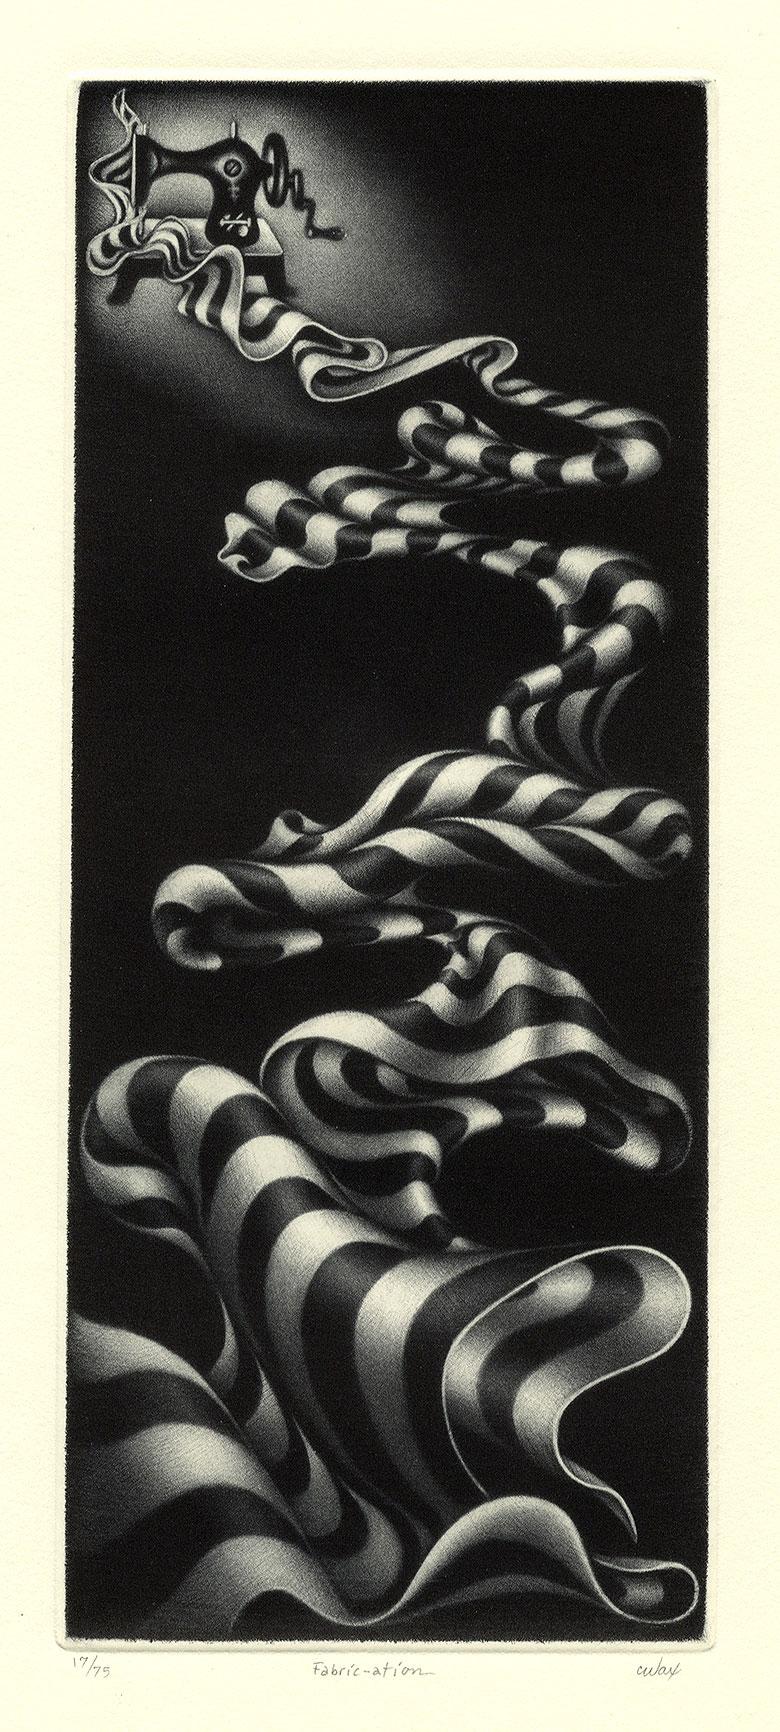 Fabric-ation - American Modern Print by Carol Wax